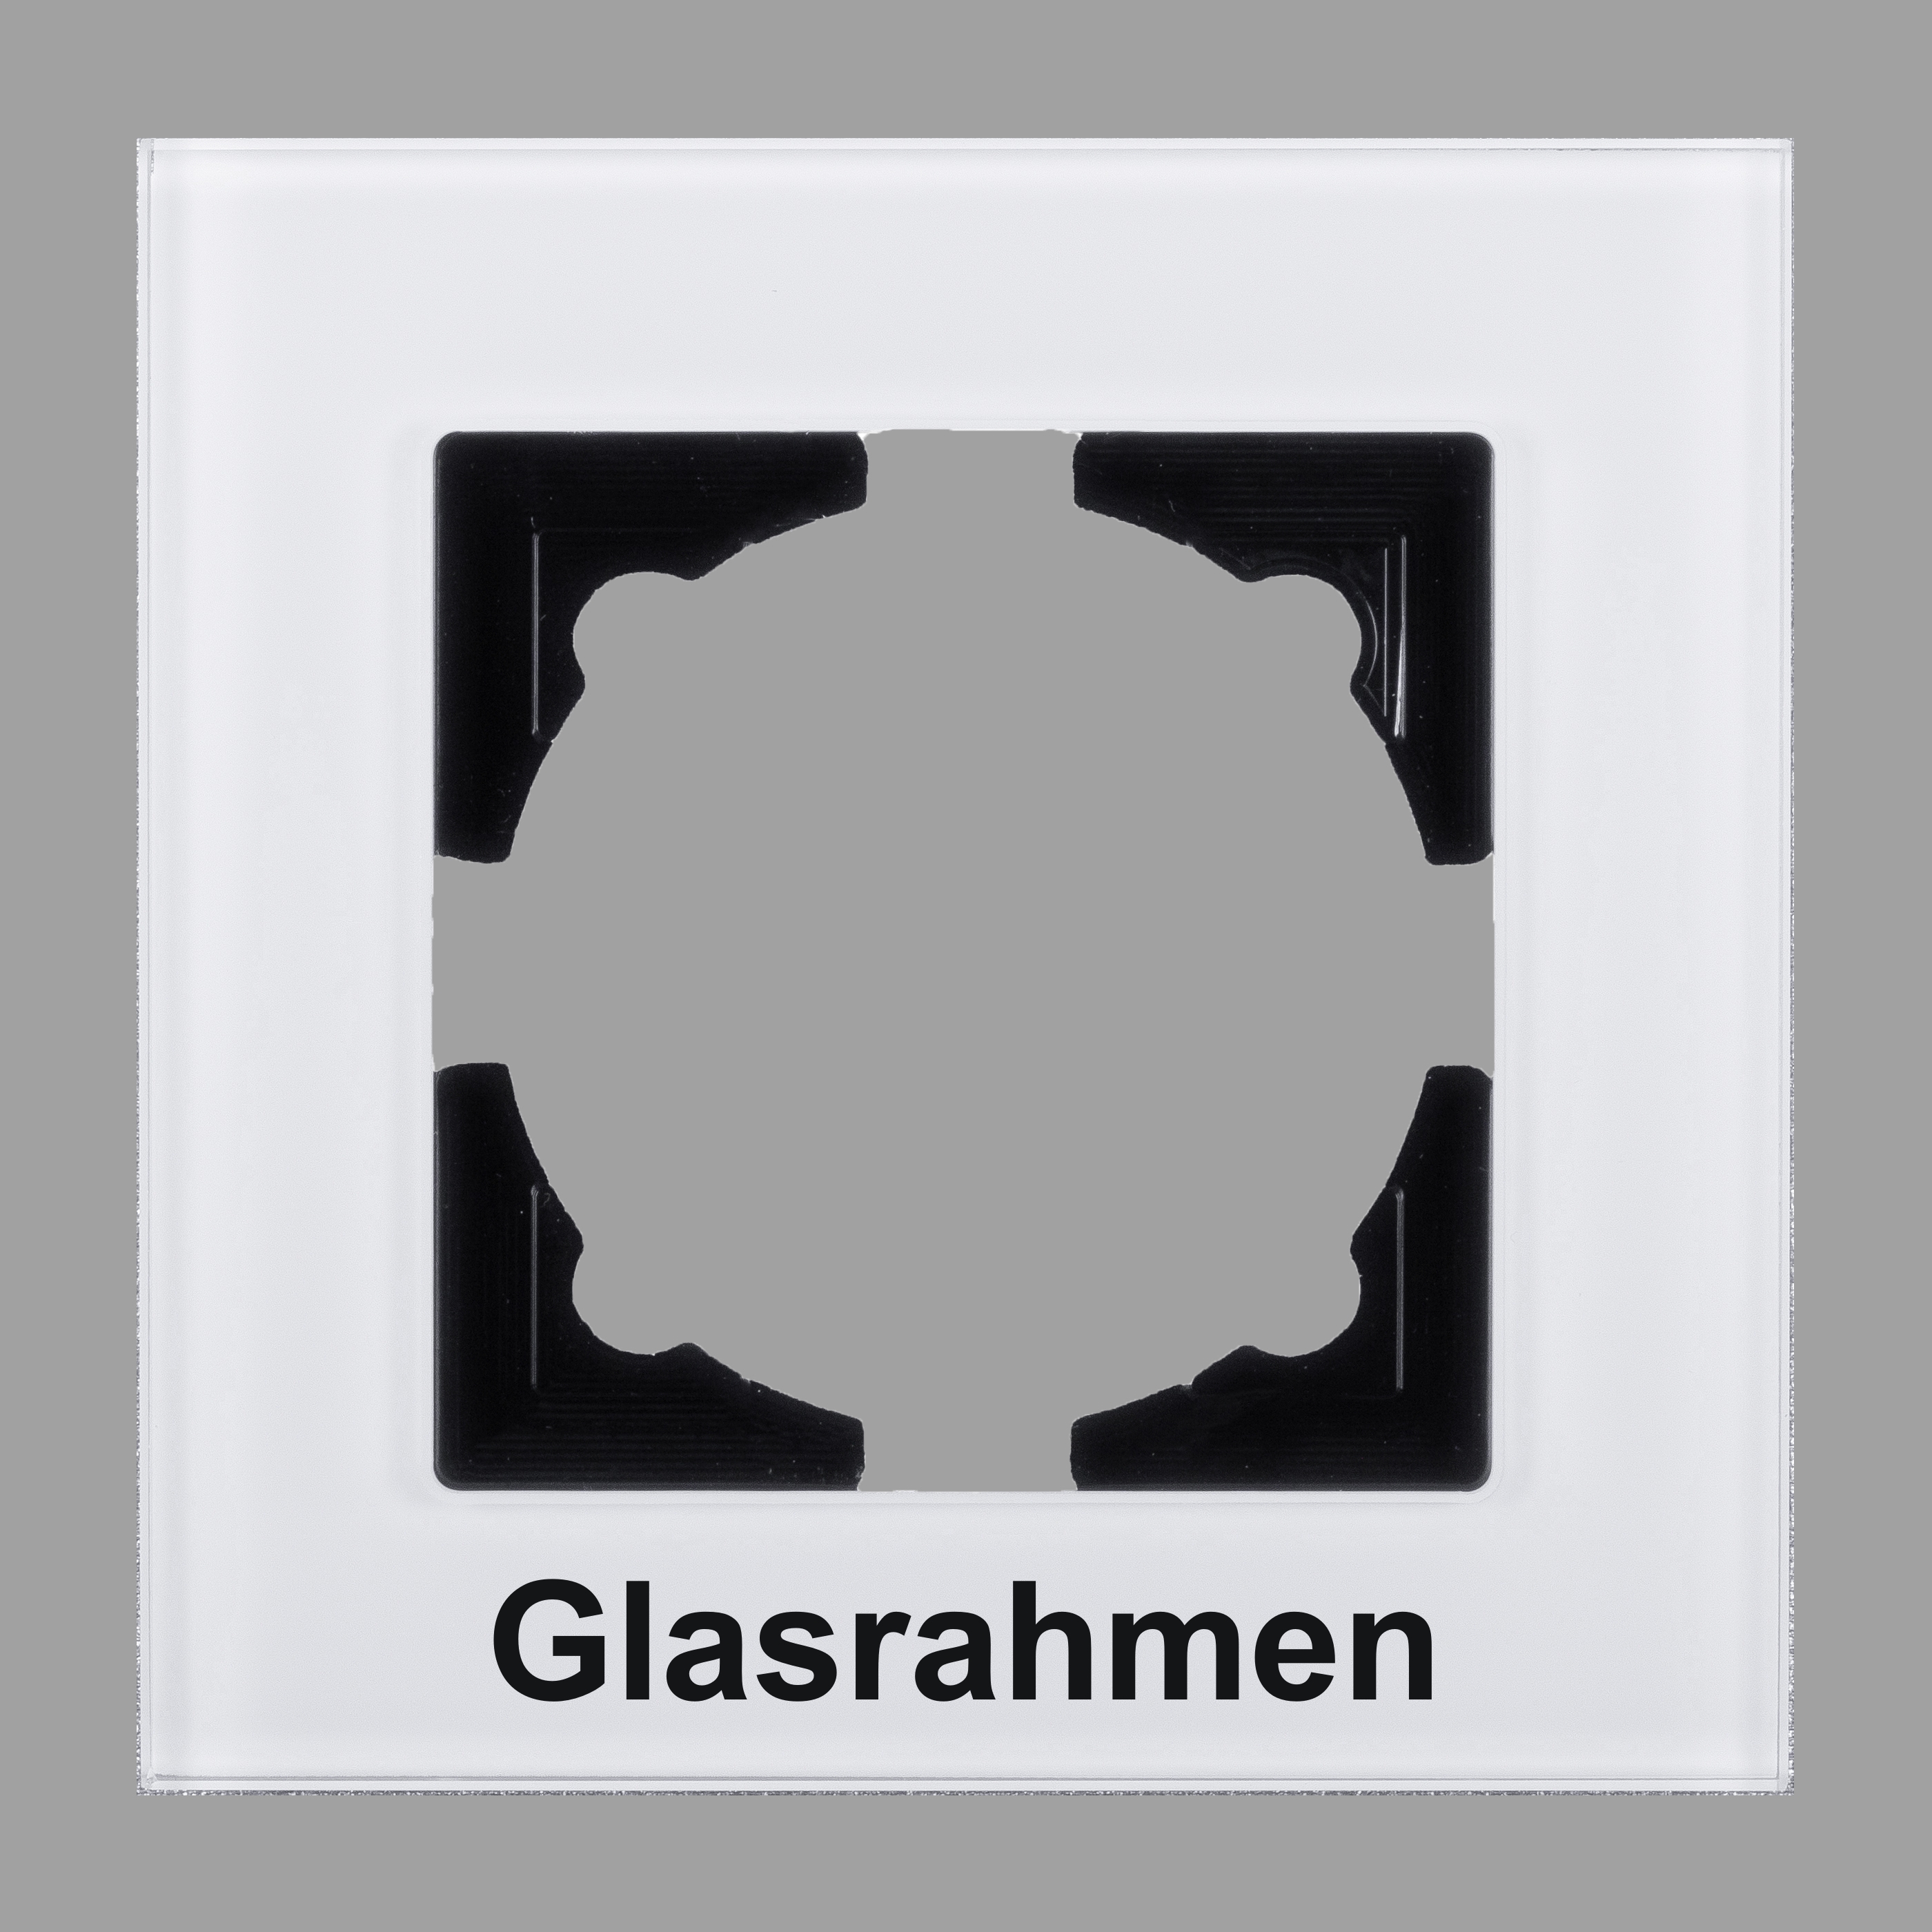 Visage 0128110140GL, 1-fach Glas-Rahmen für 1 Steckdose / Schalter  Weiß, Erkelenz